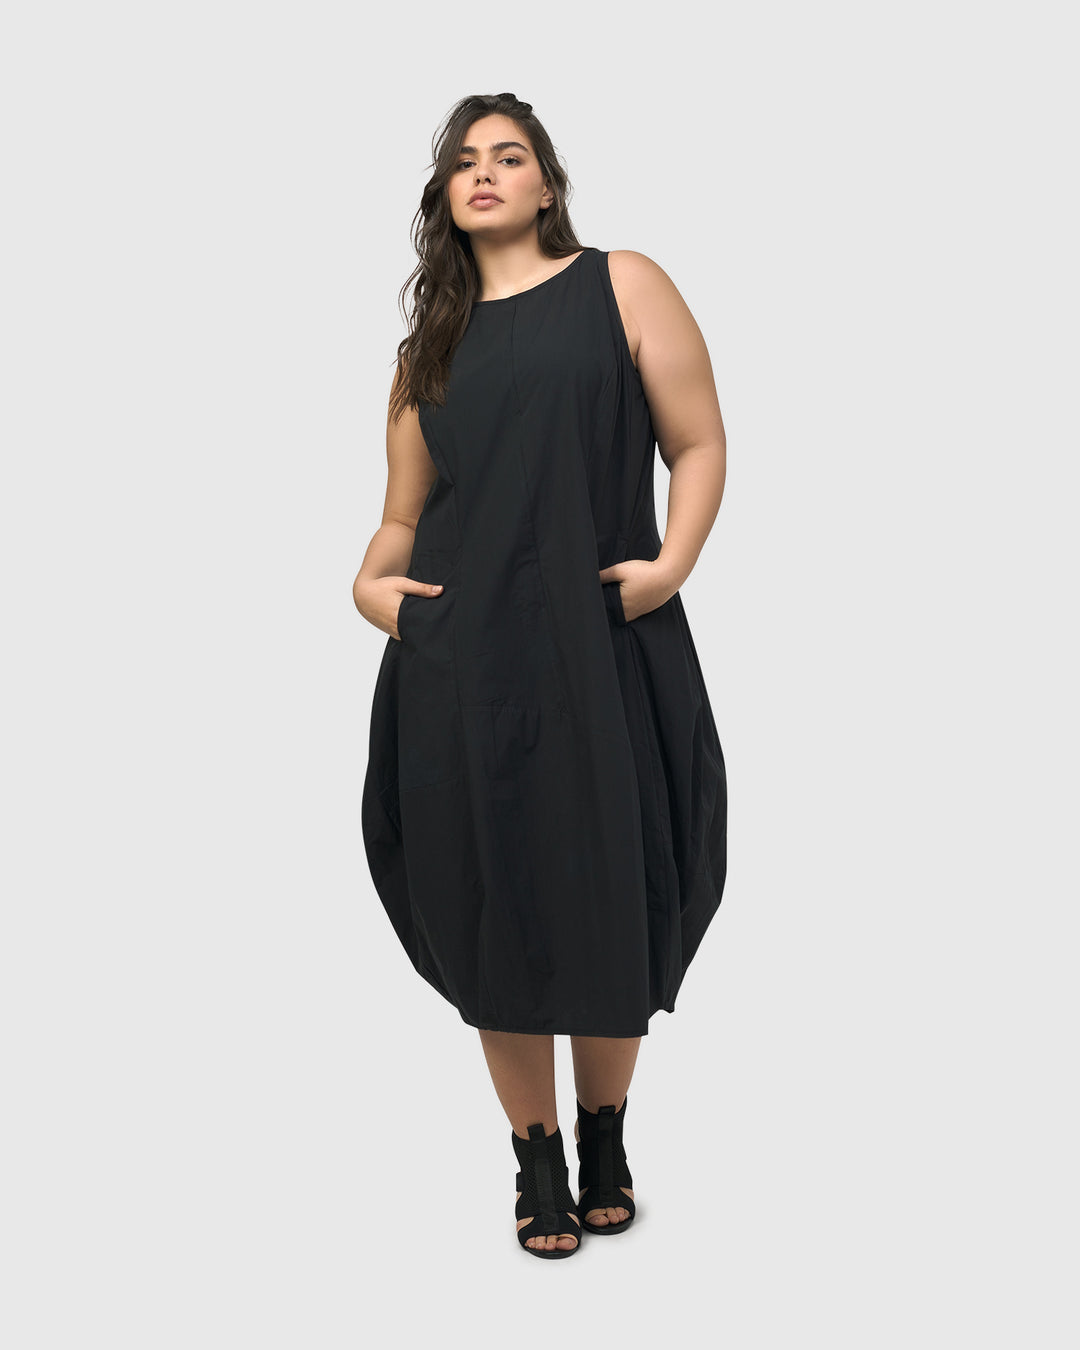 Urban Soho Sleeveless Cocoon Dress, Black